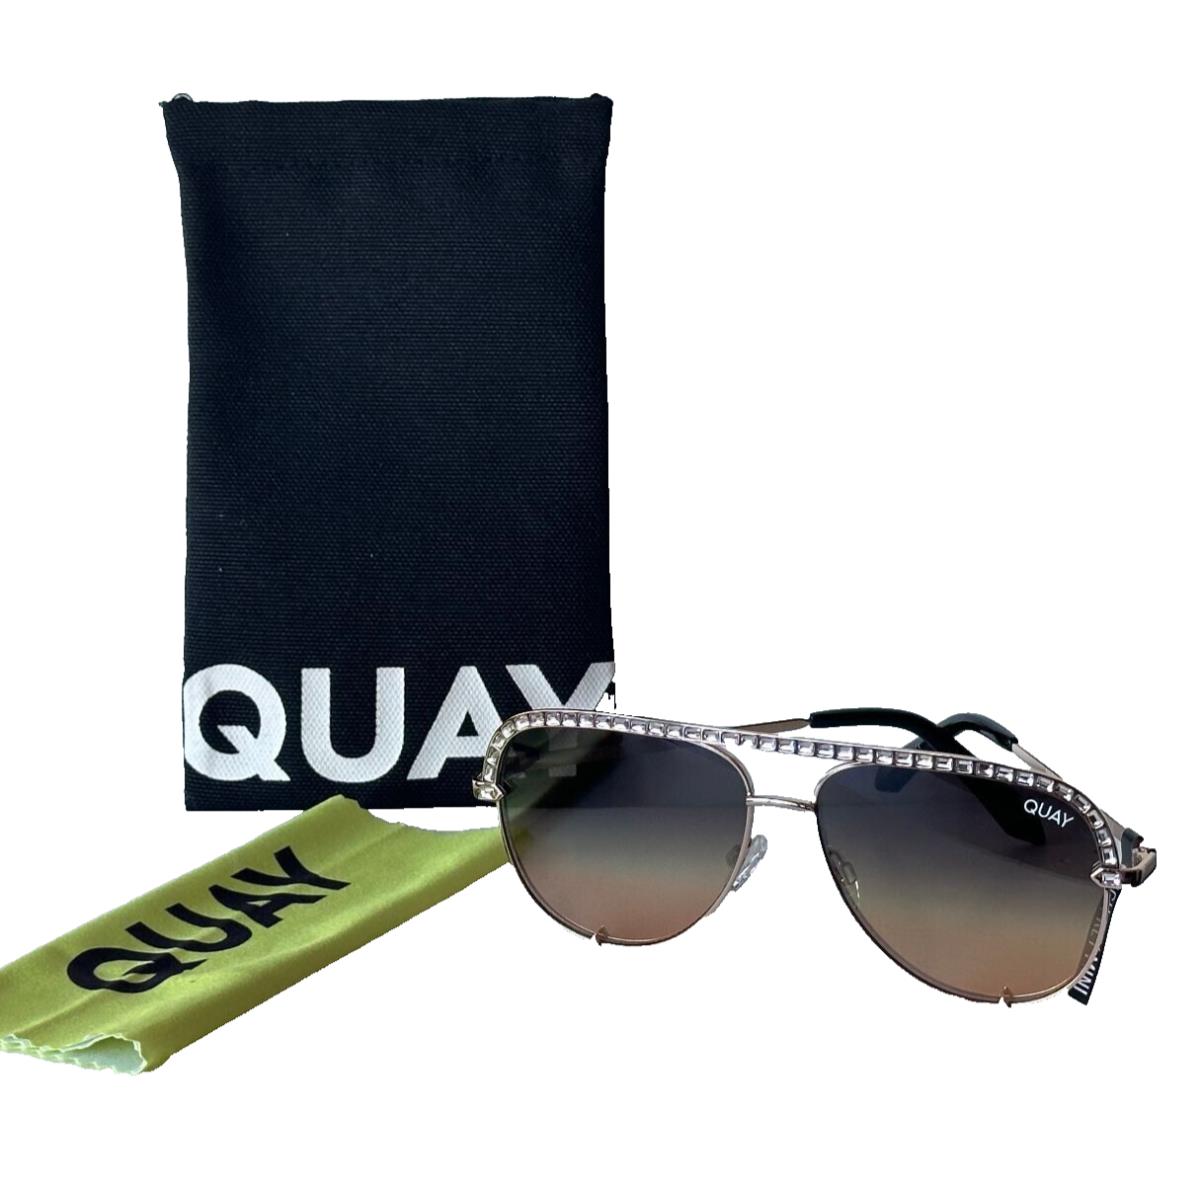 Quay Australia High Key Mini Bling Aviator Sunglasses - Frame: Gold, Lens: